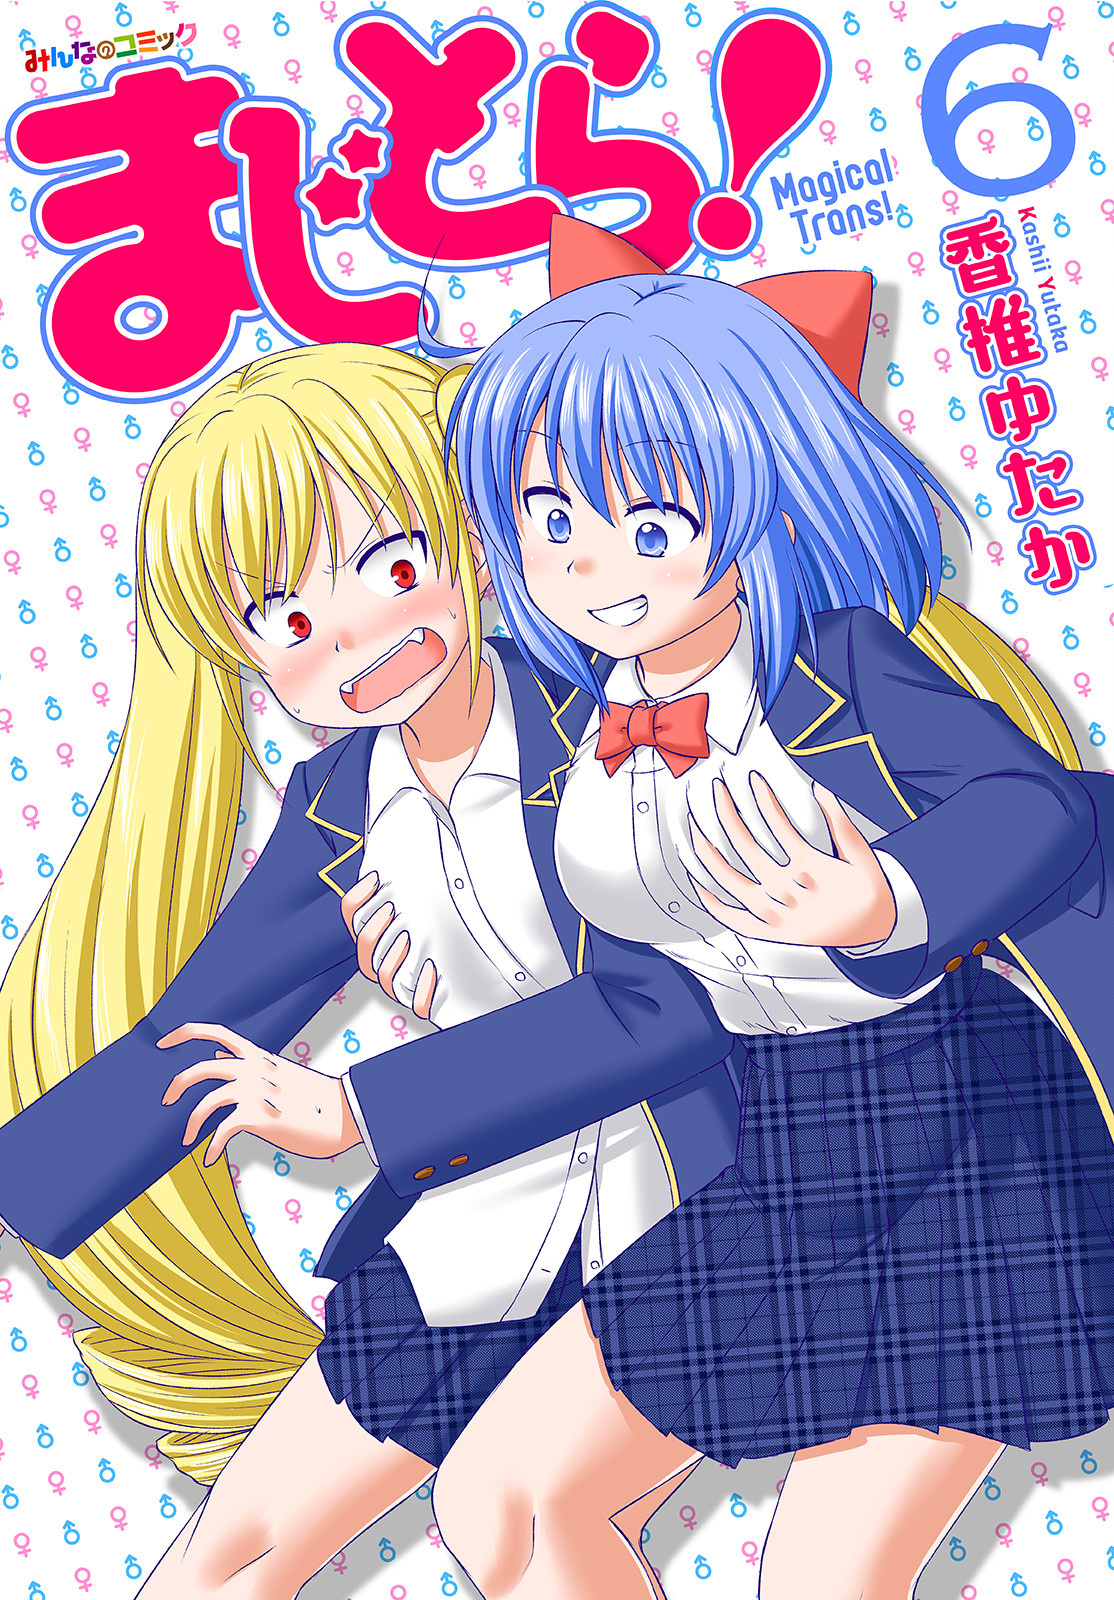 Magical Trans! manga